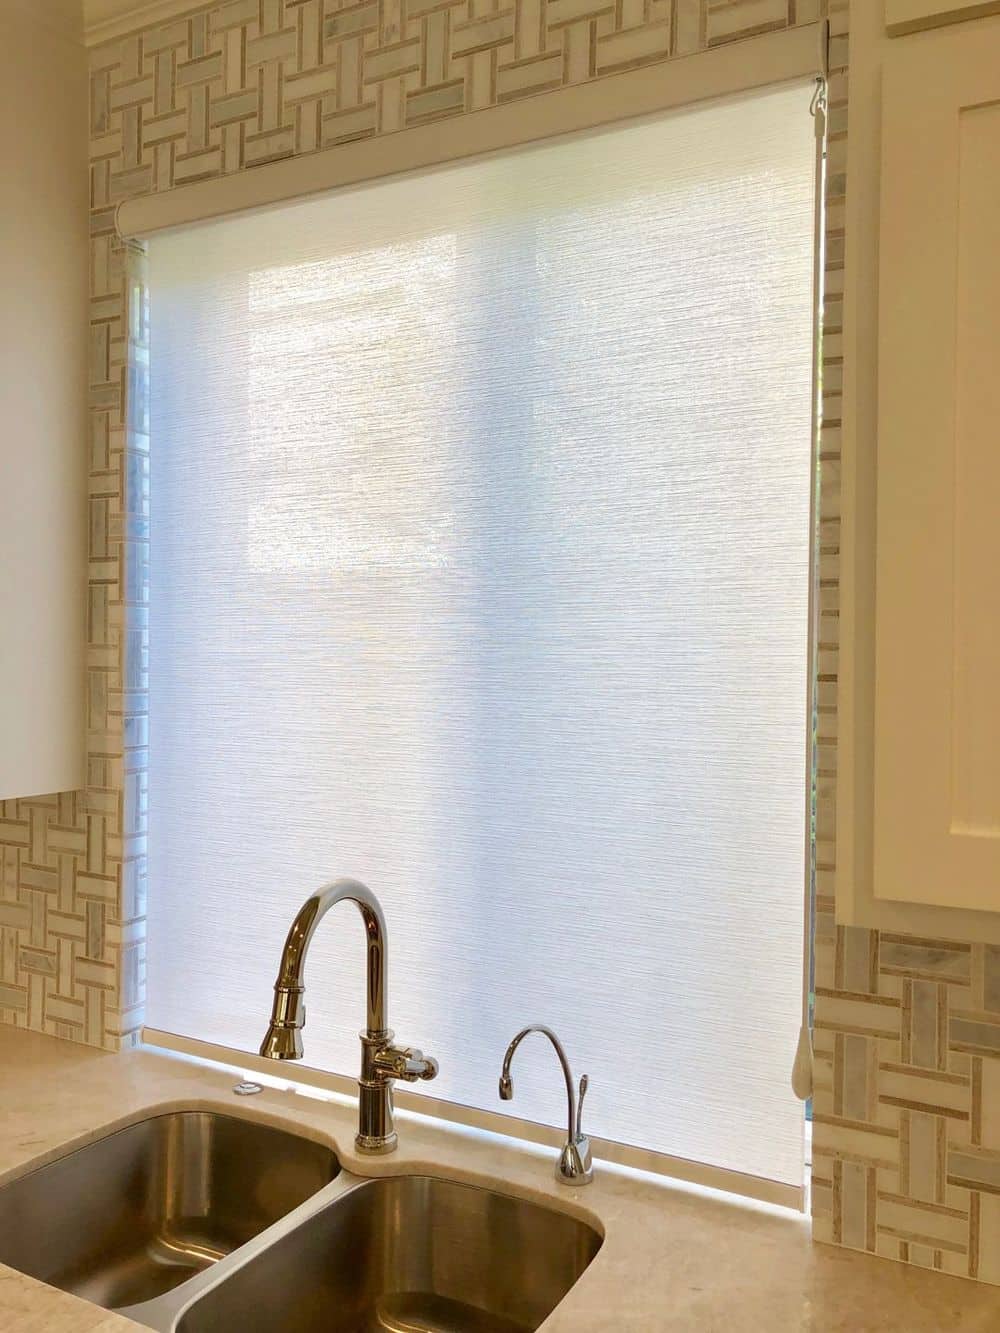 这张照片聚焦在这个家的厨房窗户上，窗户上有遮阳板。厨房的时尚水槽后挡板也可以看到。